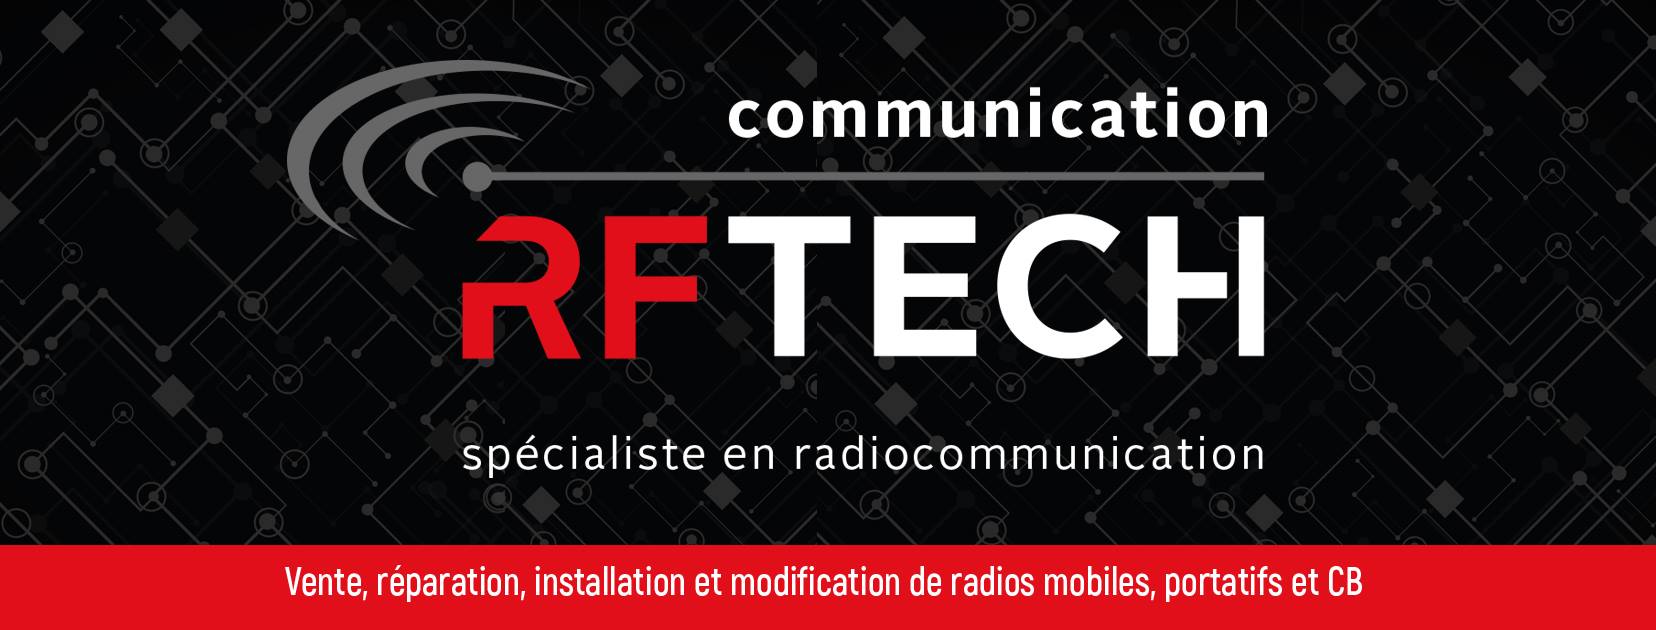 RFTECH logo